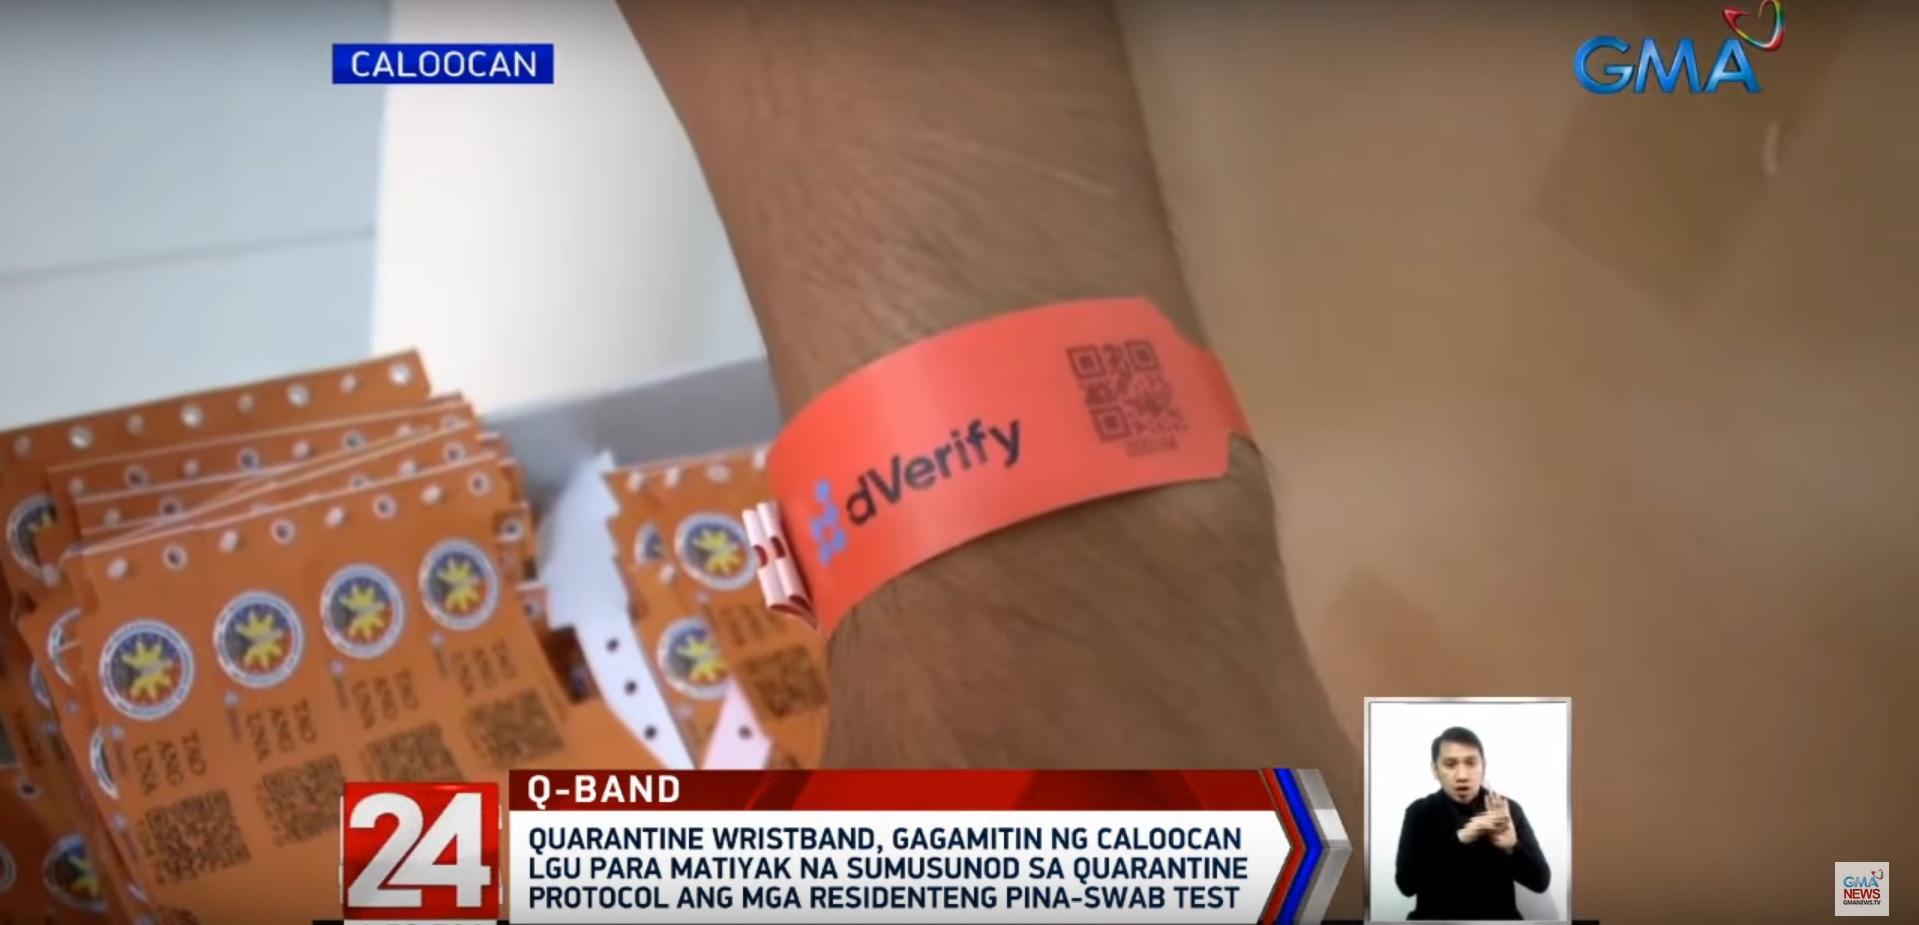 Caloocan City's quarantine wristband 